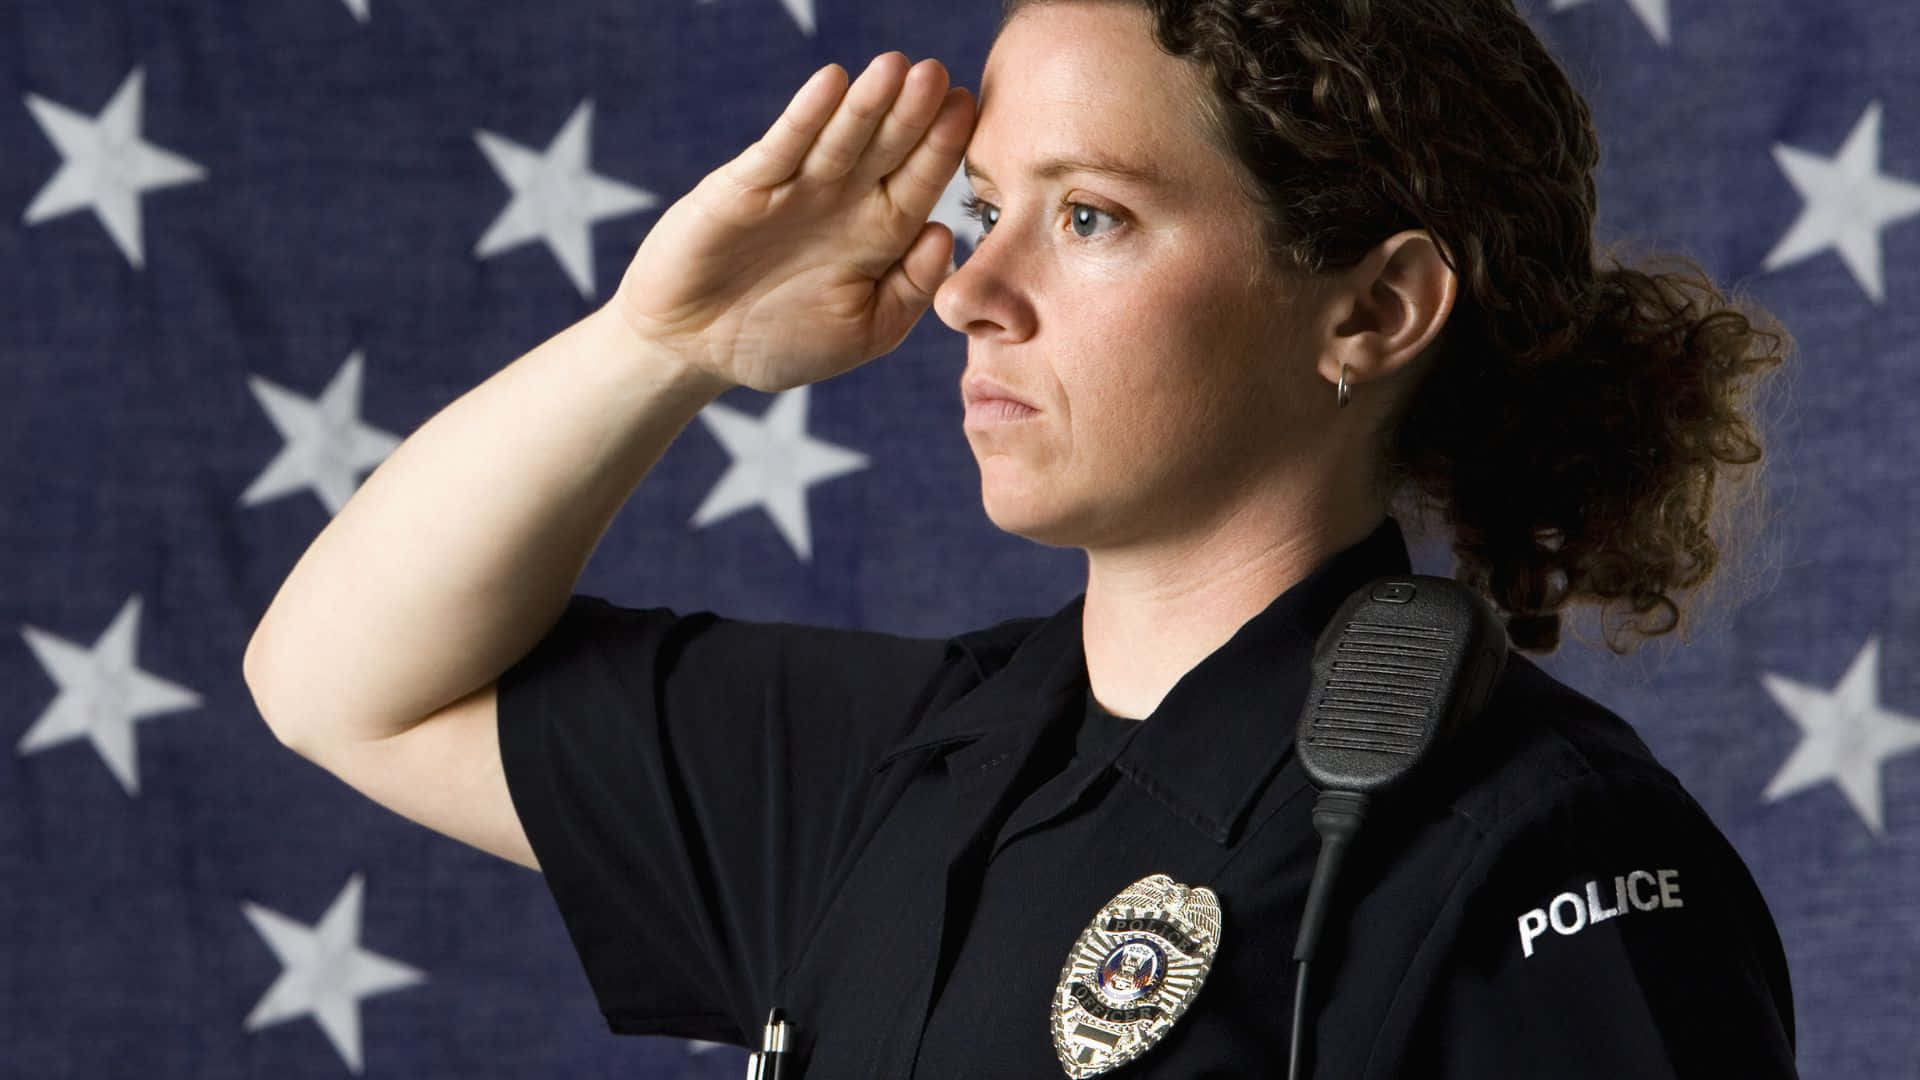 Agentede Policía Femenina Con Uniforme Haciendo El Saludo Fondo de pantalla